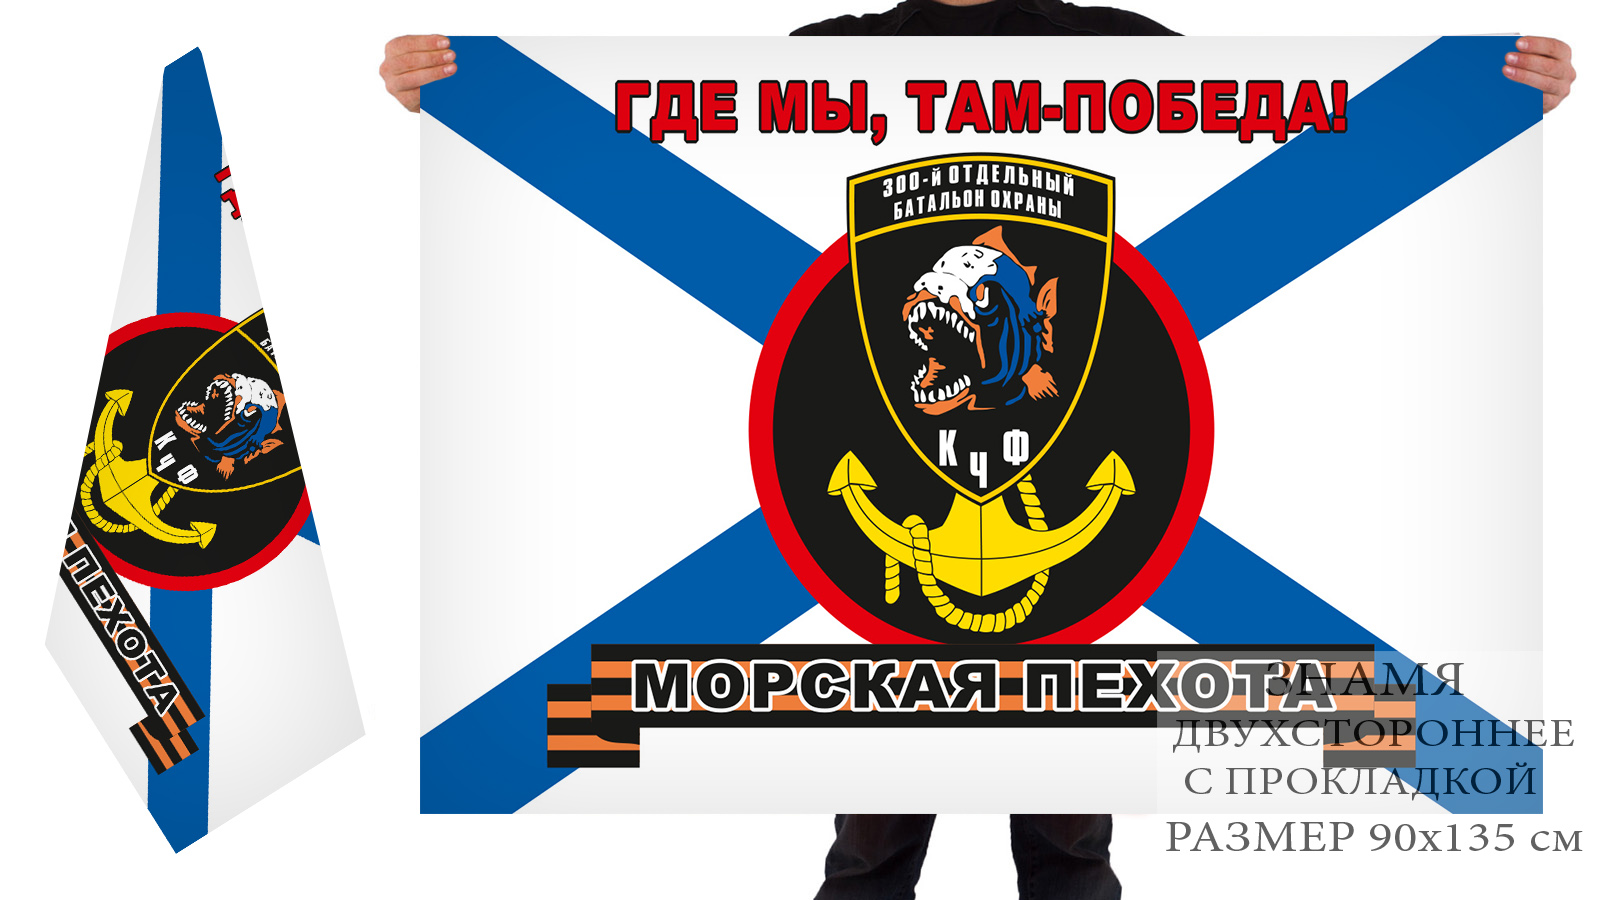 Двусторонний флаг Морской пехоты Черноморского флота «300 отдельный батальон охраны»